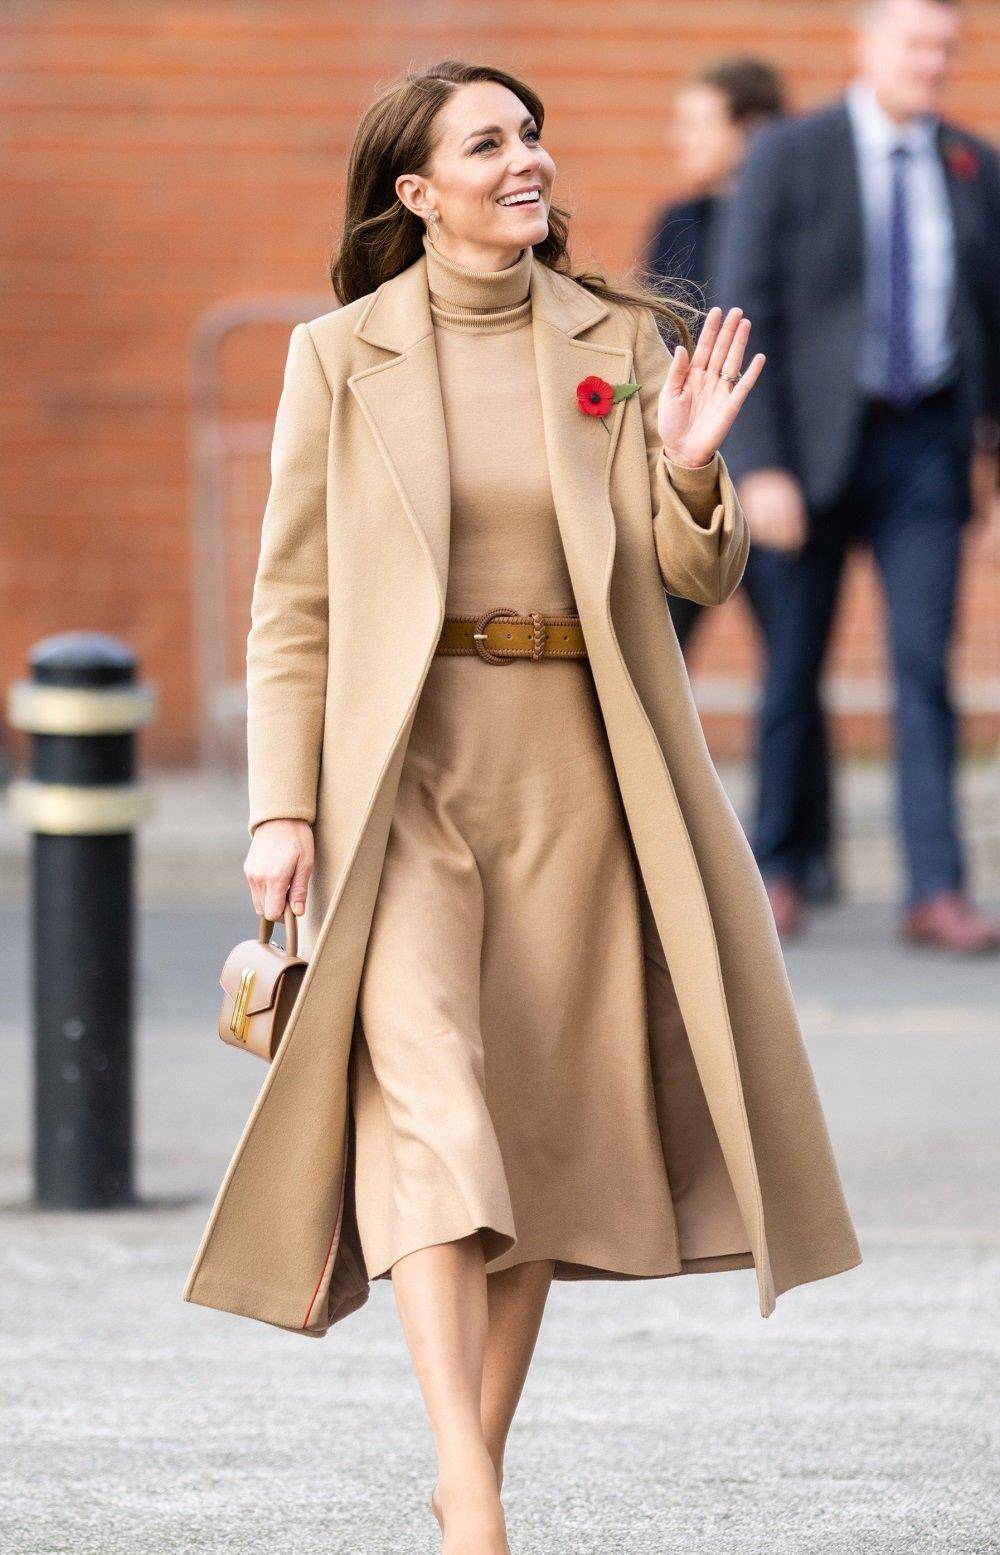 冬天凯特王妃在出席重大活动时,最常穿的就是各种大衣